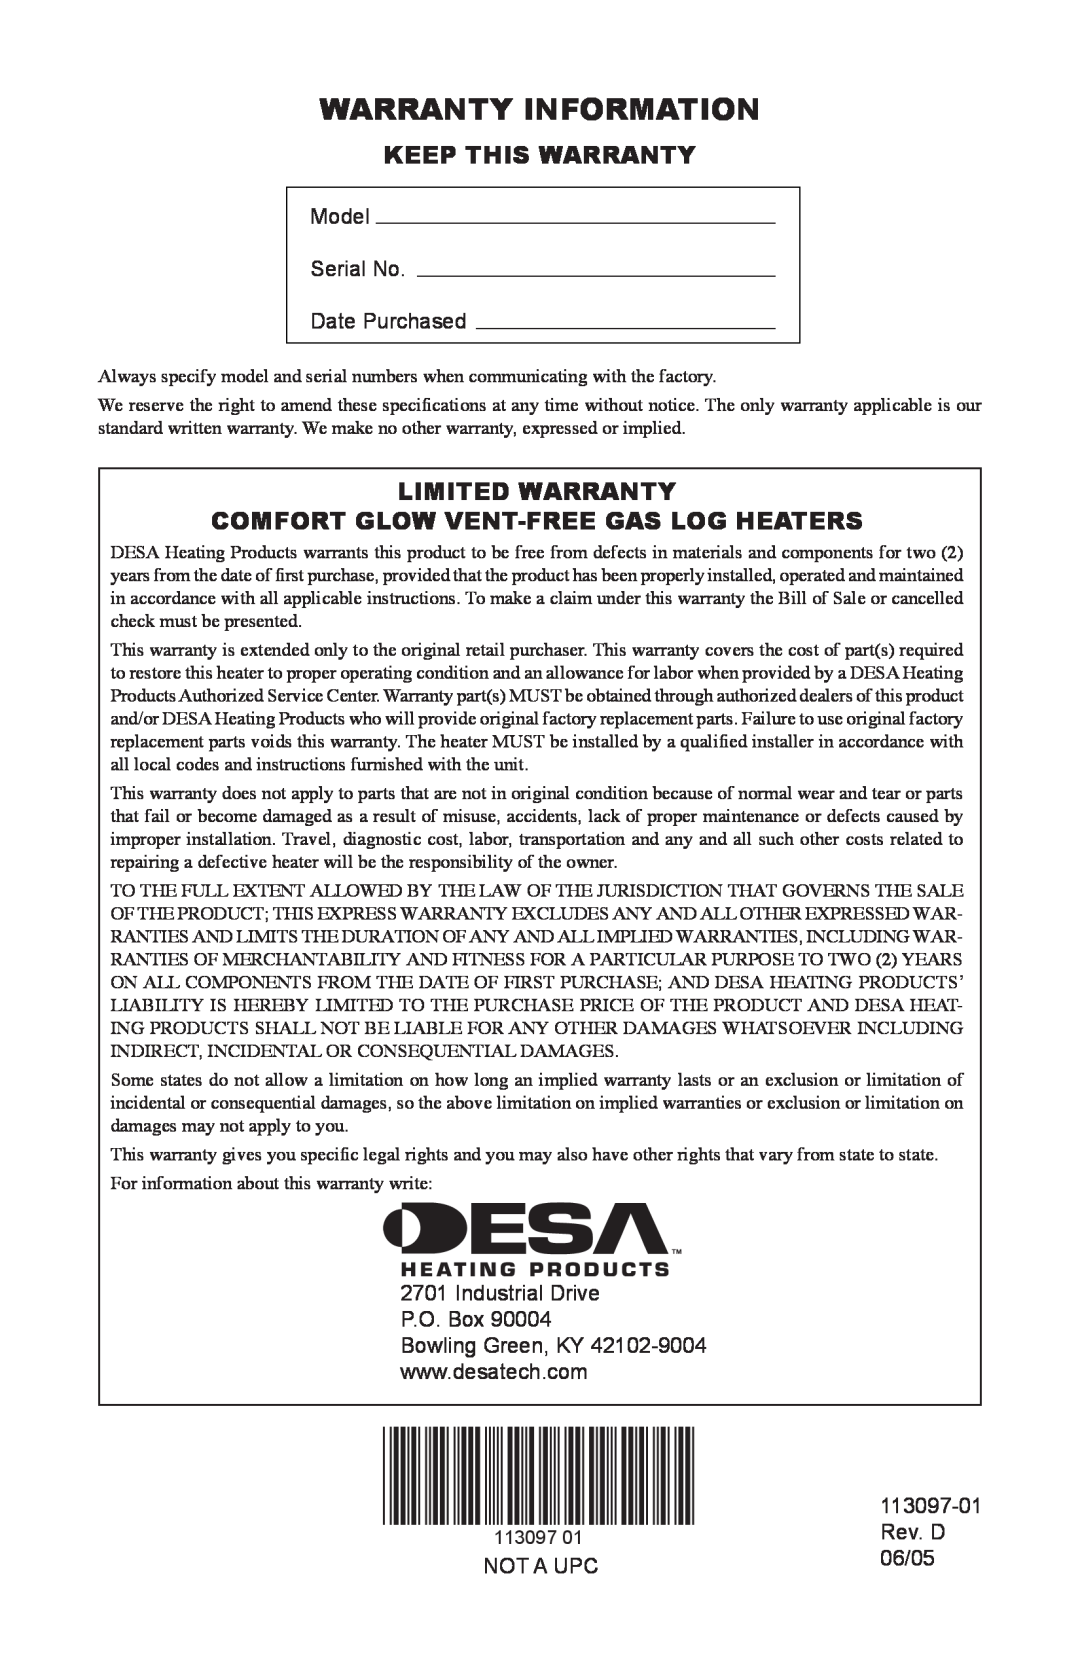 Desa Tech Warranty Information, Keep This Warranty, Limited Warranty, Comfort Glow Vent-Freegas Log Heaters 